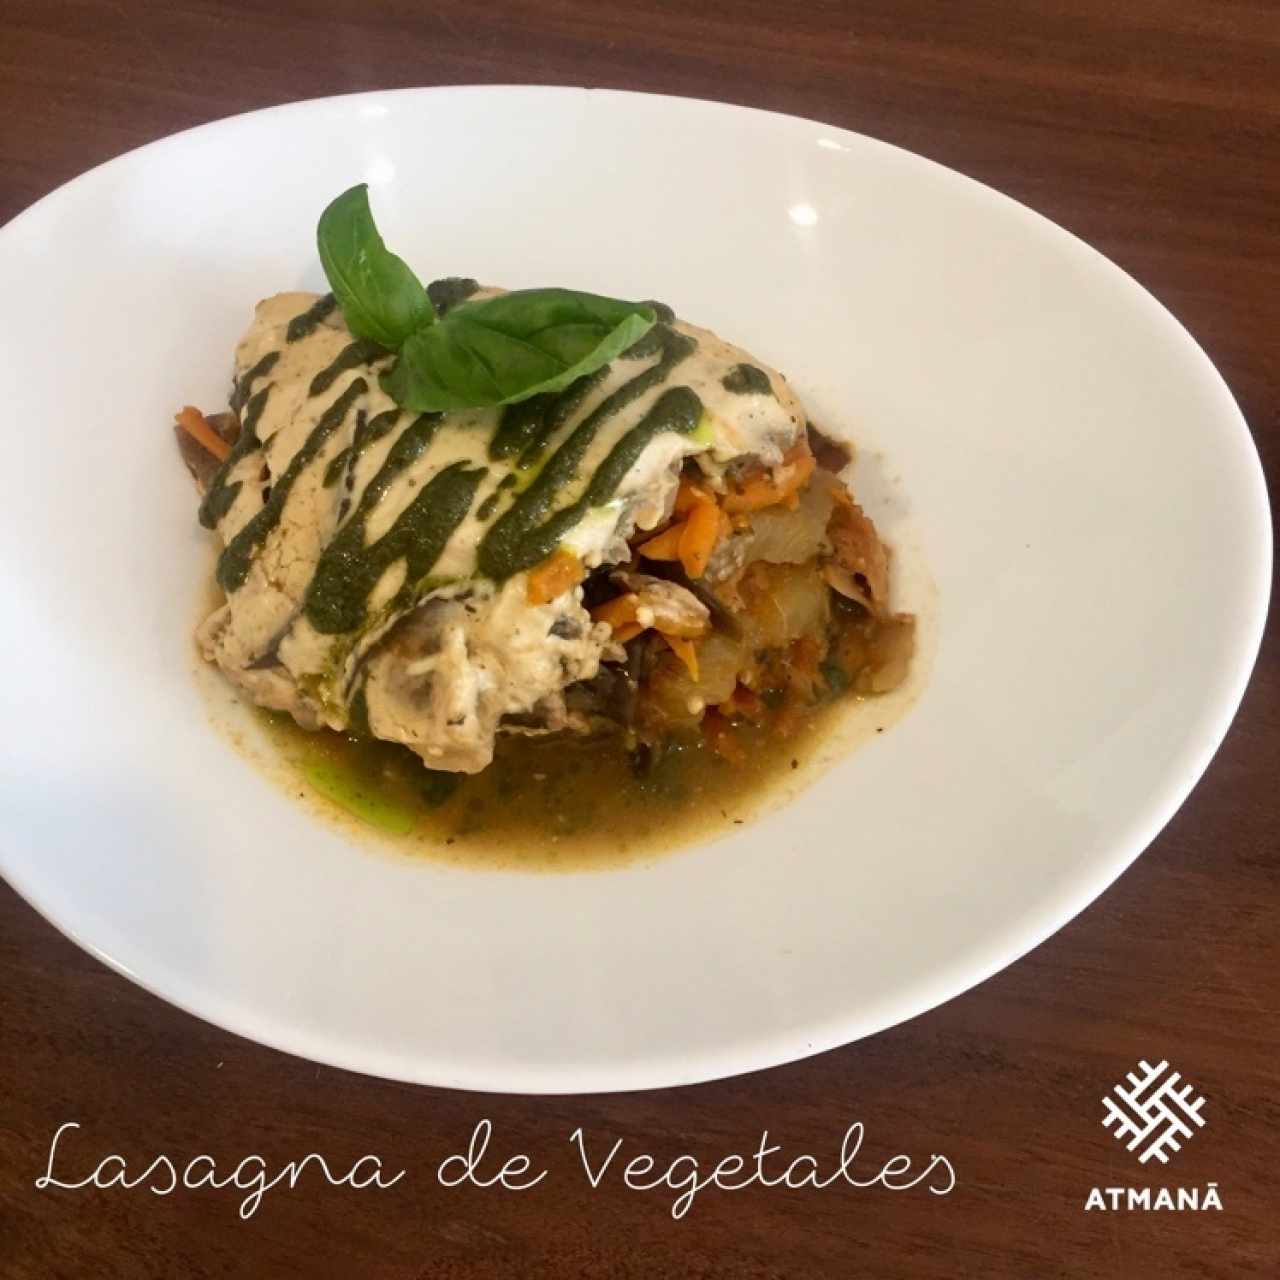 Lasagna Vegana de vegetales 